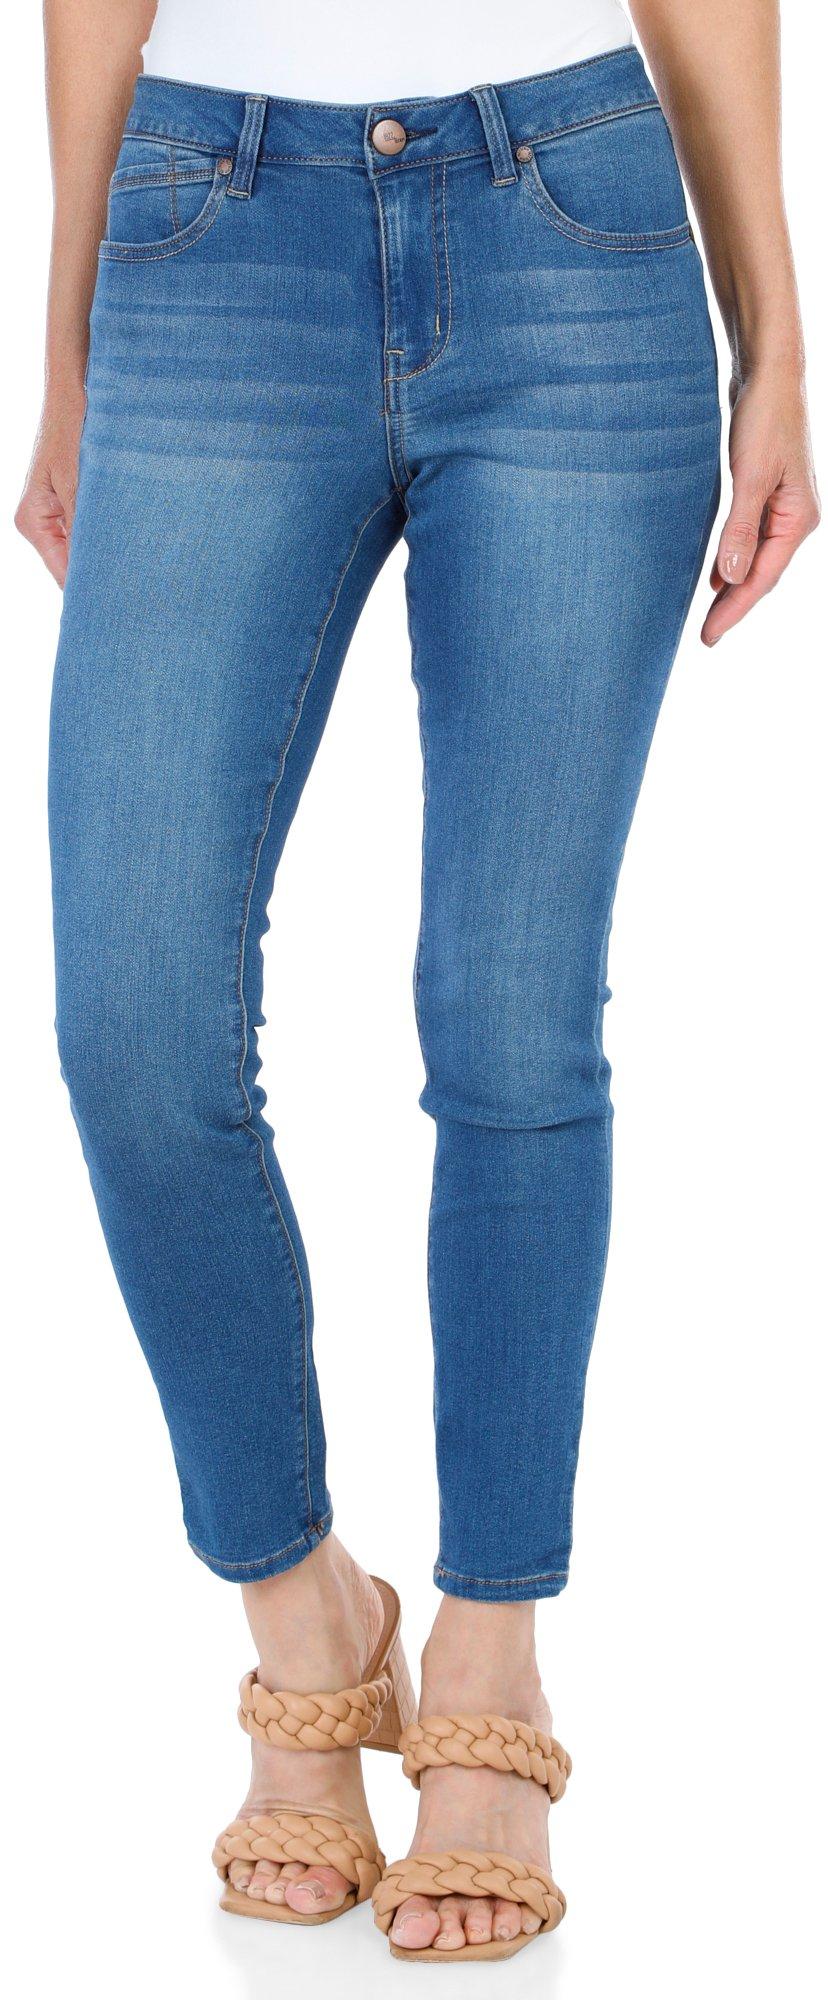 Women's Ankle Skinny Jeans